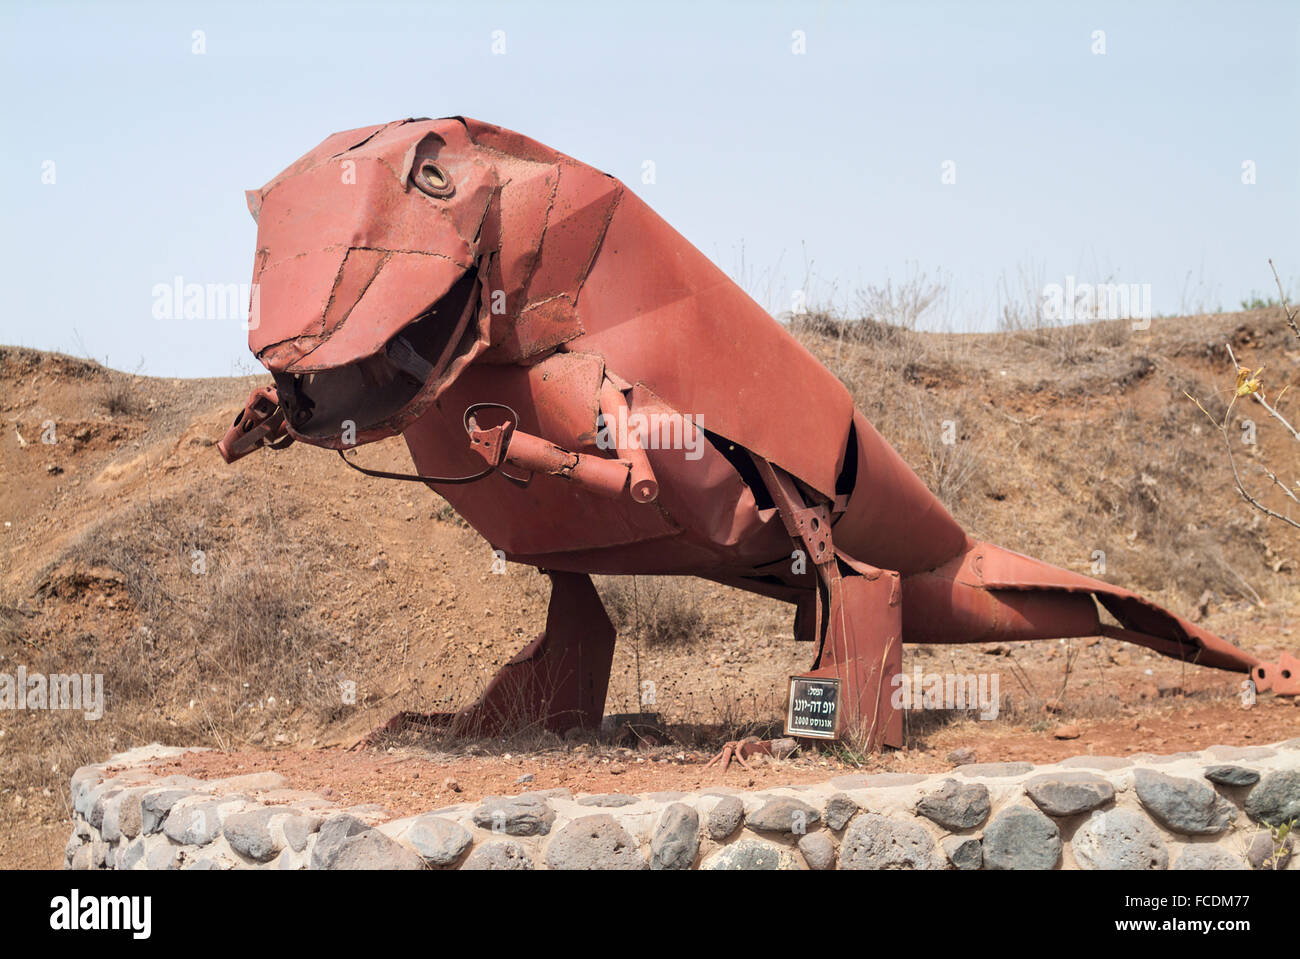 Dinosaurier-Statue von Metallteilen, Schrott Militär militärische Gedenkstätte, Mount Bental, Golanhöhen, Israel Stockfoto